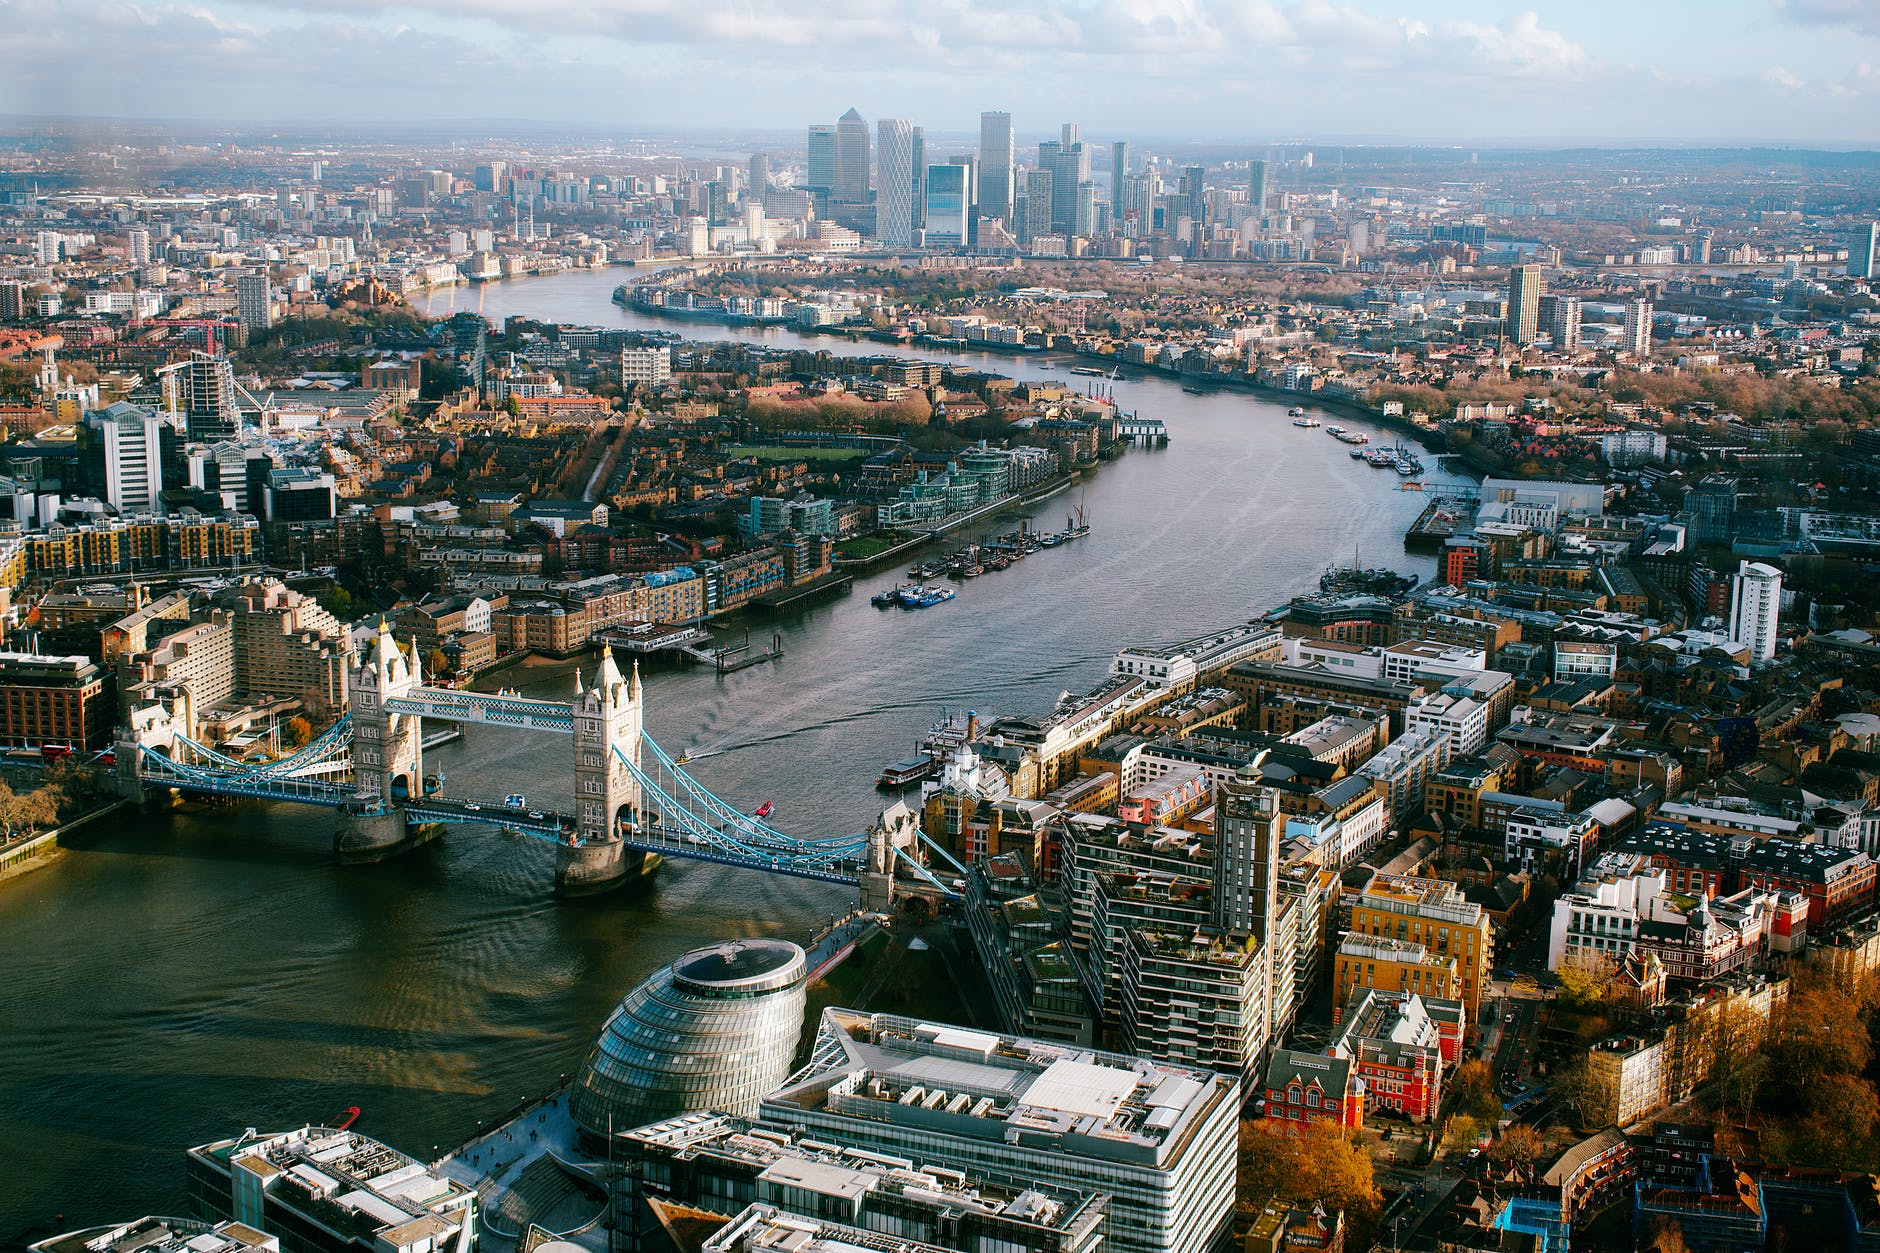 London making a comeback outside the EU as banks go on a hiring spree